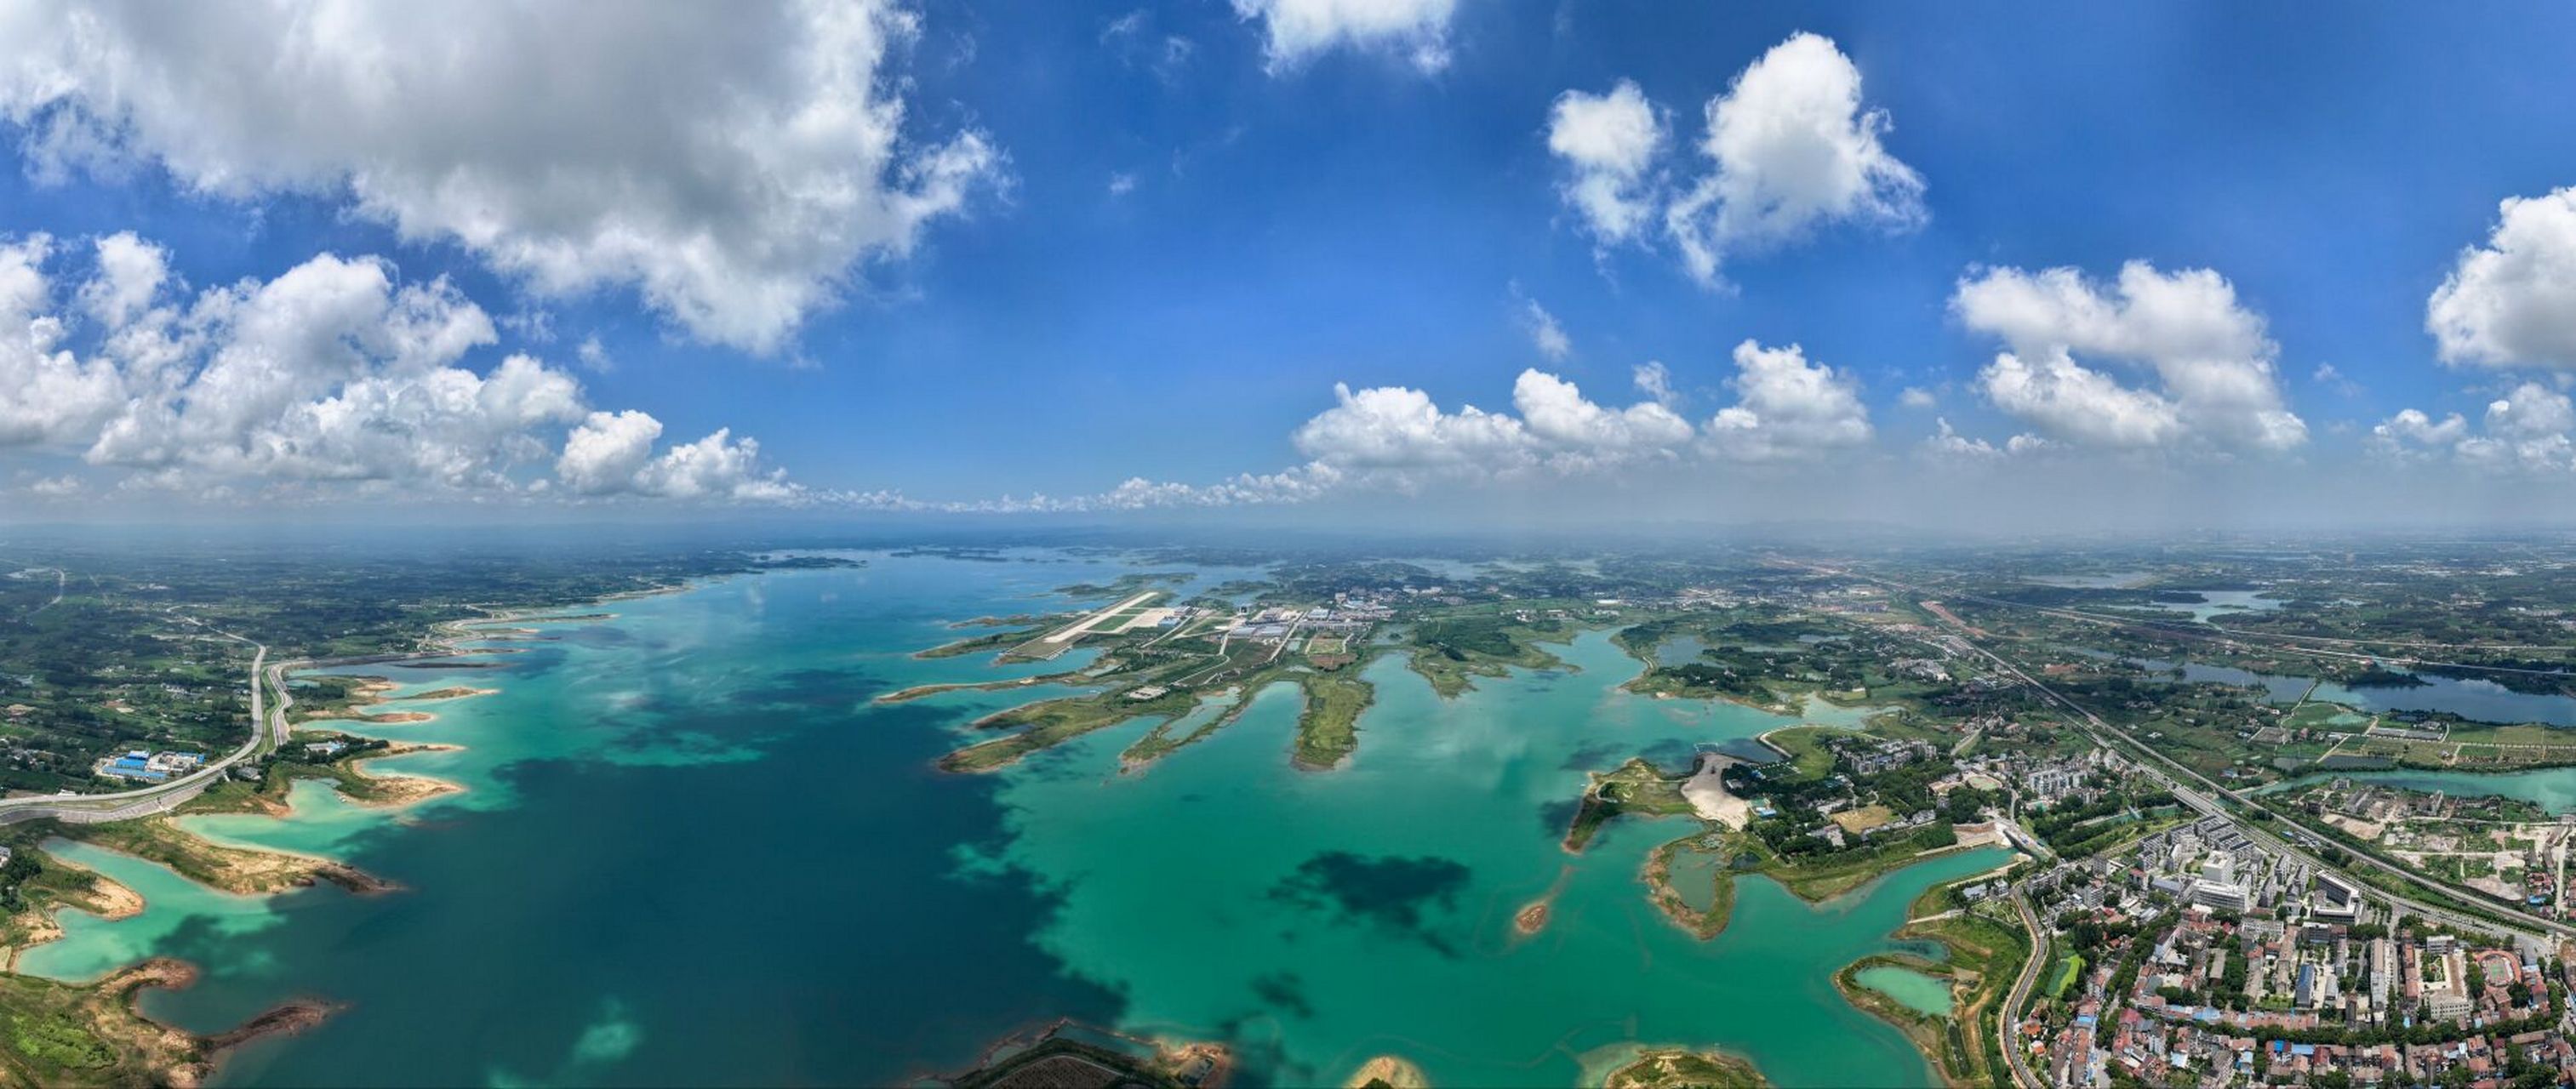 不是马尔代夫,这里是湖北 500米高空俯瞰荆门漳河风景区,是不是很有